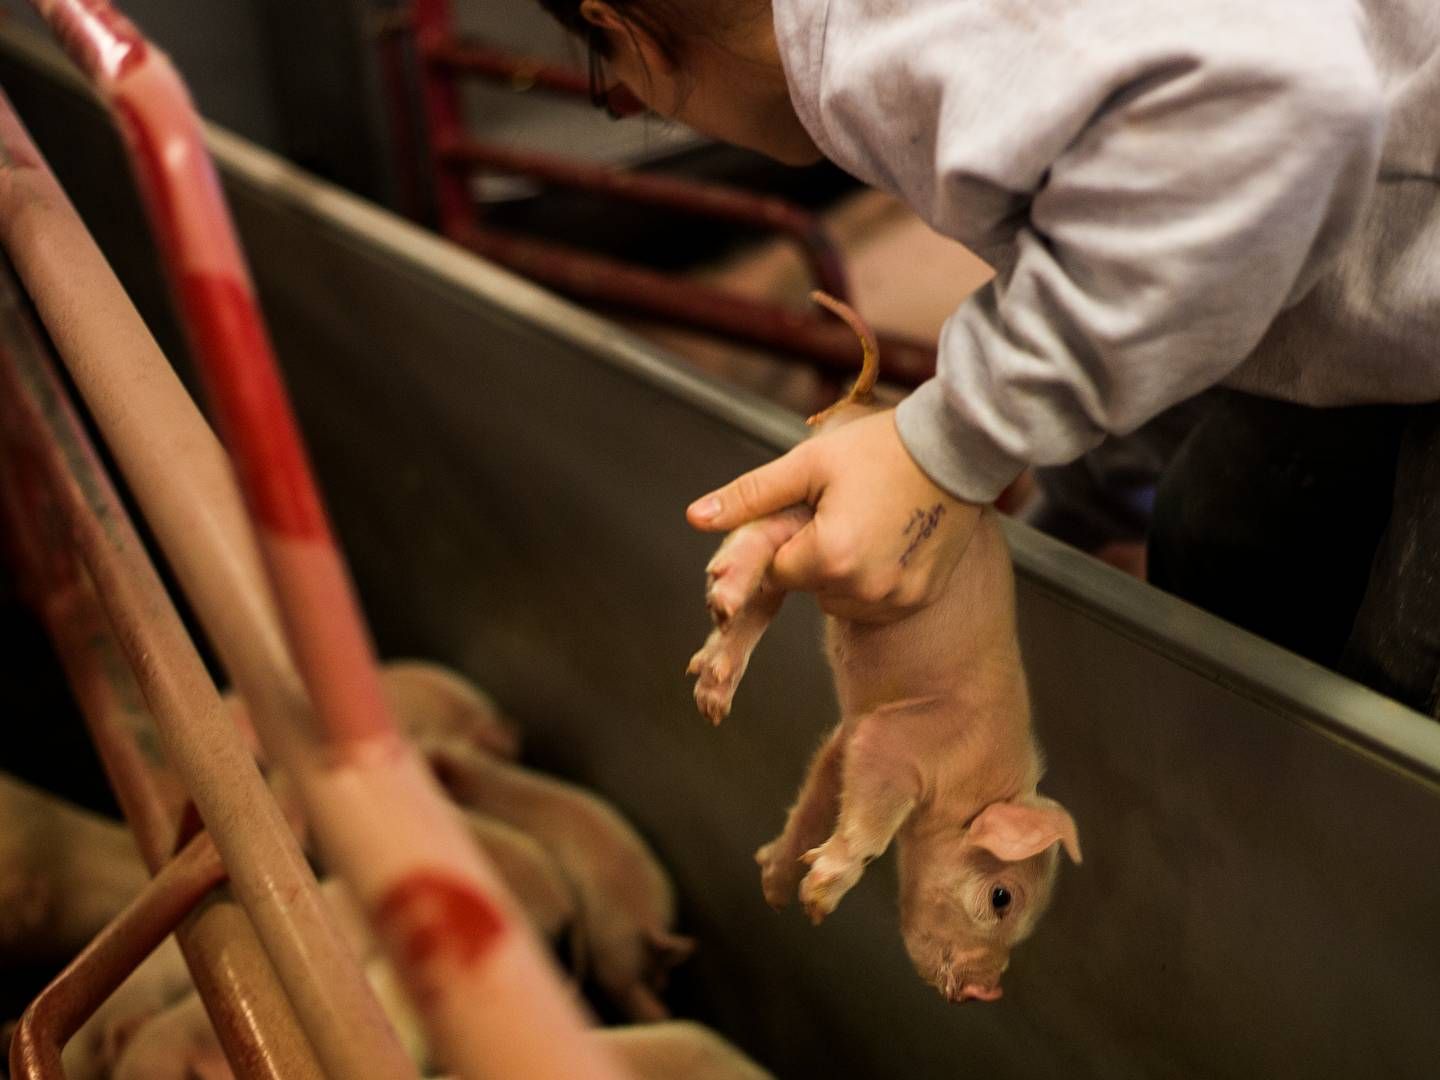 Ca. 95 pct. af de grise, der når til slagterierne i Danmark, har fået kuperet halen, oplyser Fødevarestyrelsen. | Foto: Simon Fals/Politiken/Ritzau Scanpix